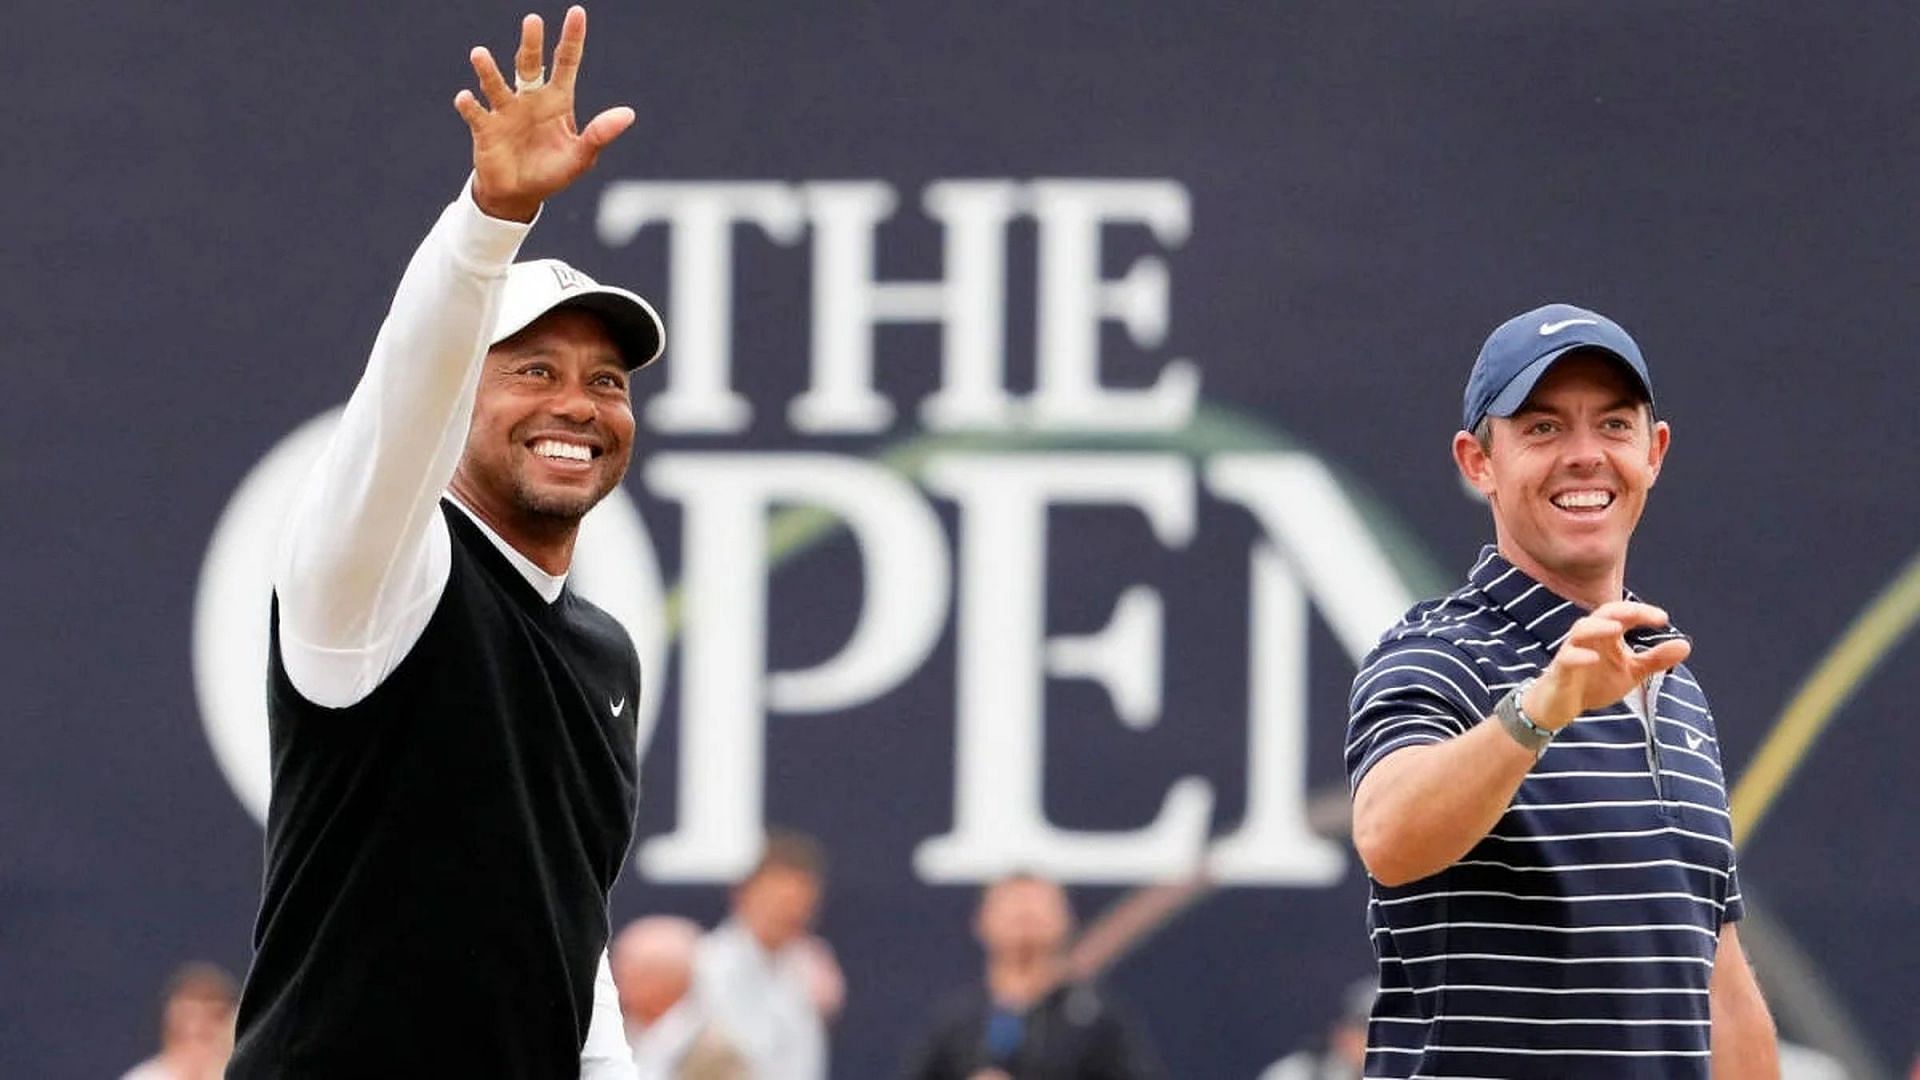 Tiger Woods and Rory McIlroy (Image via PGA Tour)